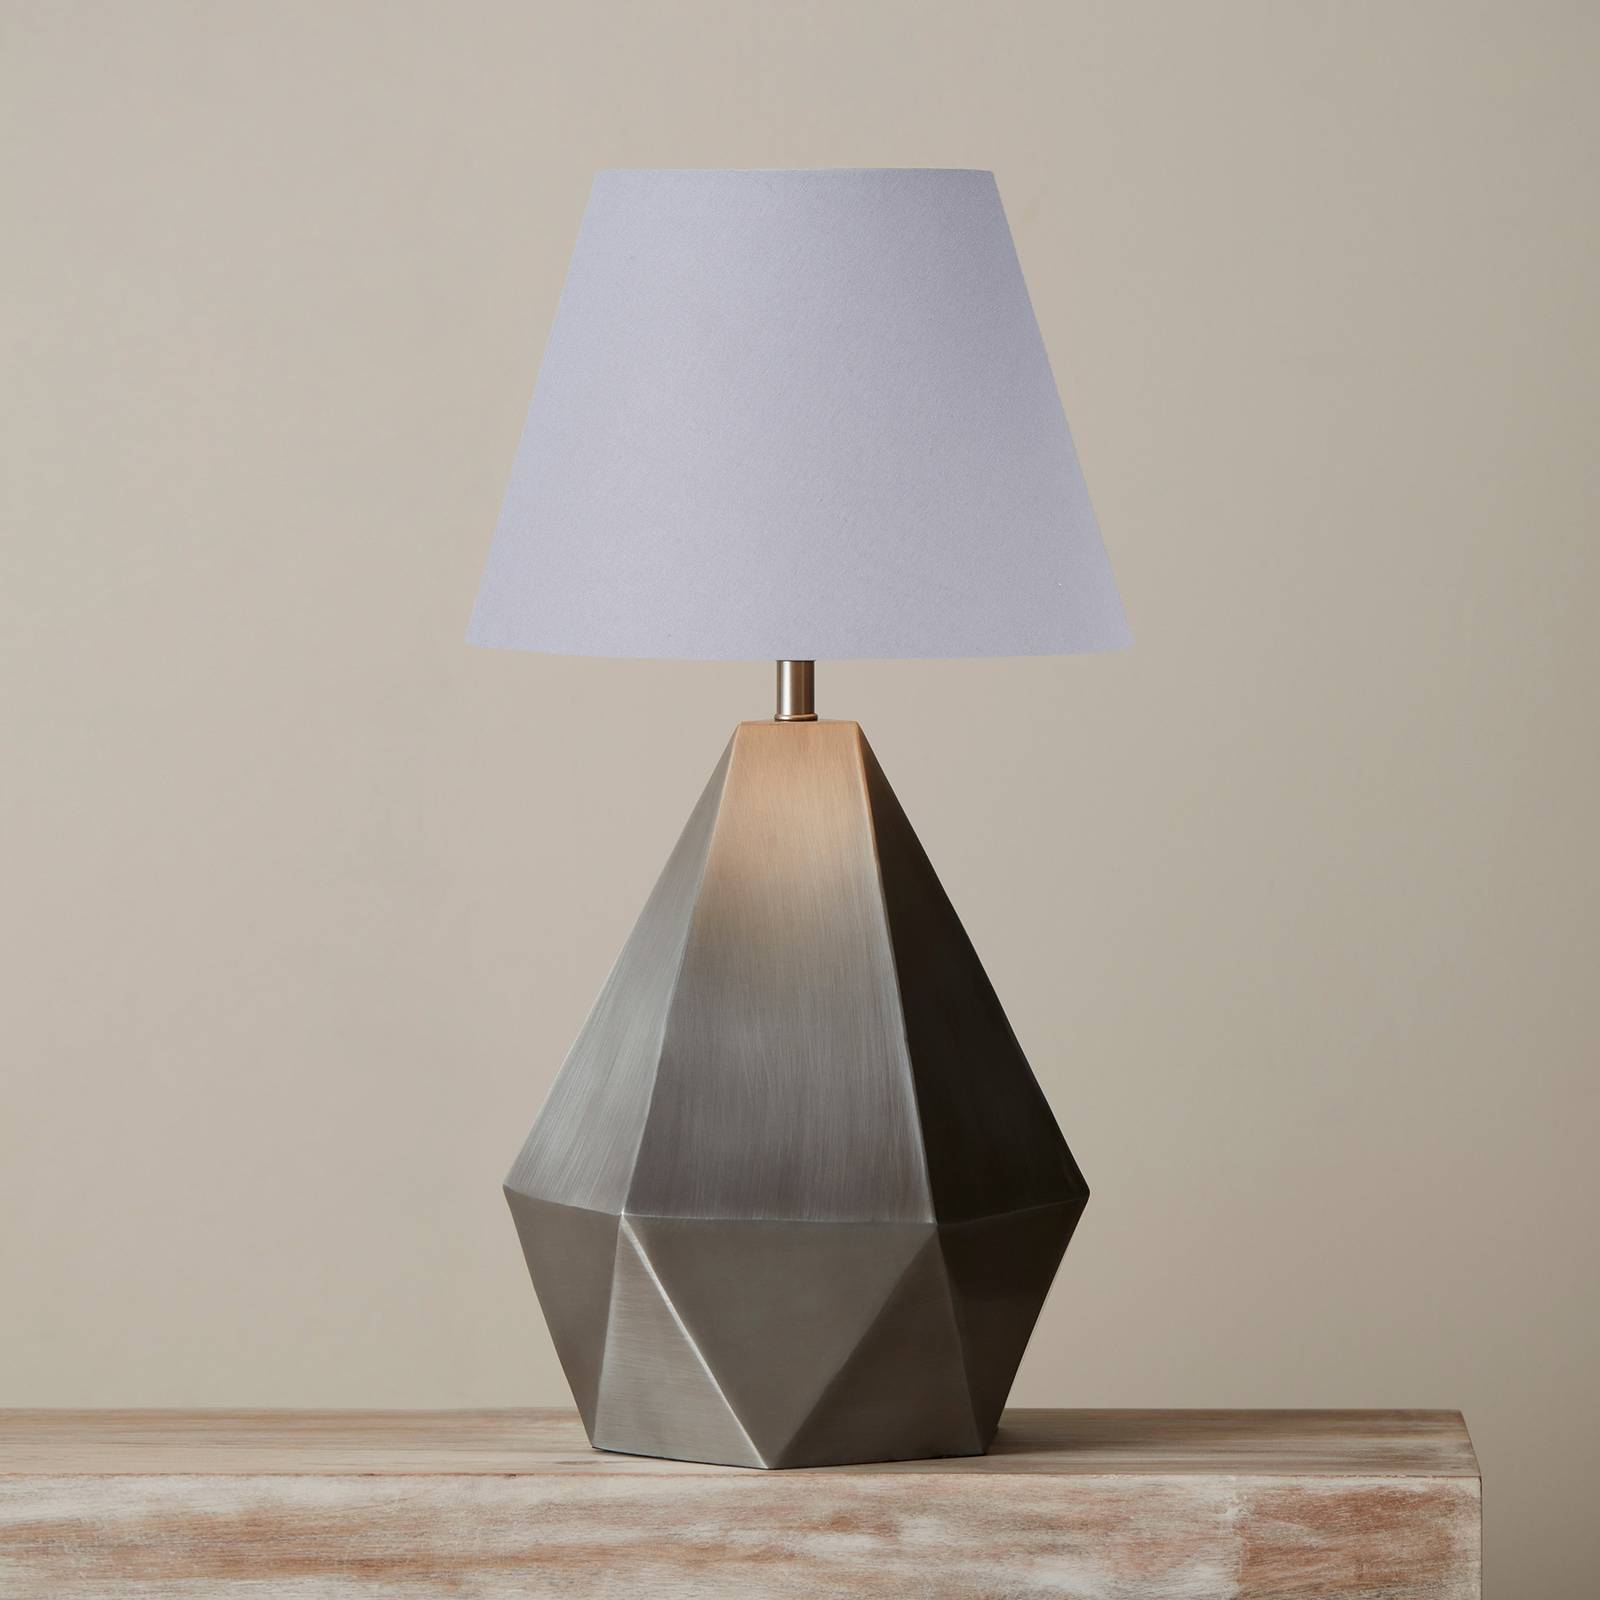 PR Home Trinity bordlampe Ø 25cm sølv/grå